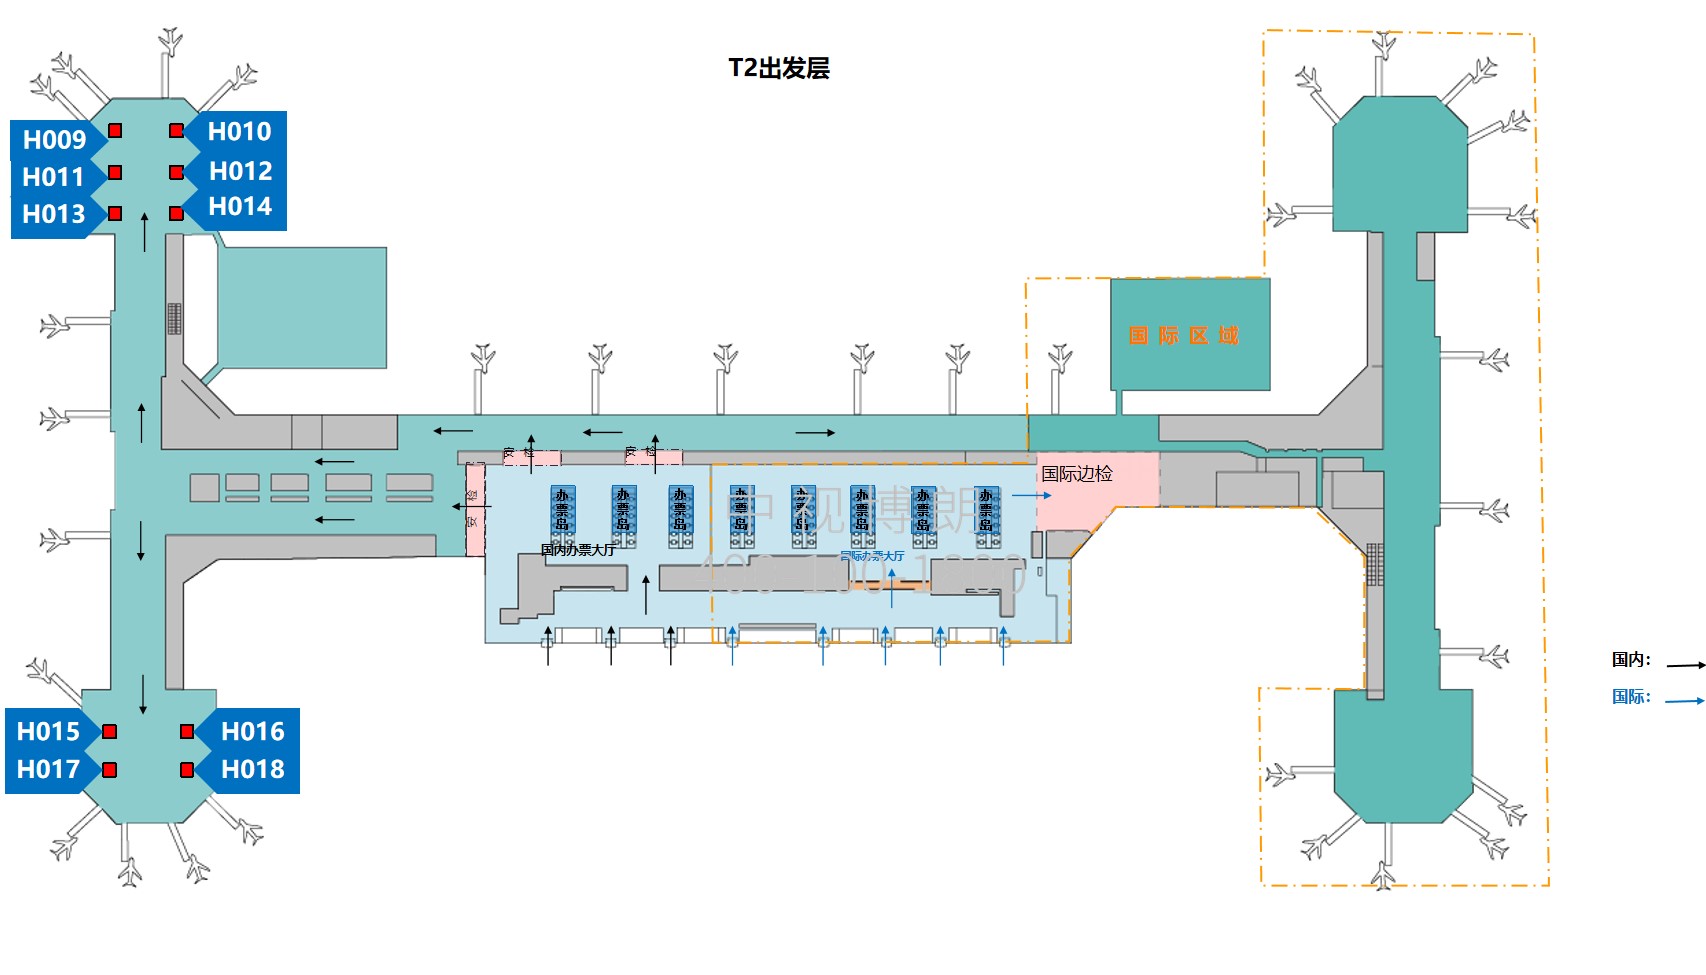 北京首都机场广告-T2 Domestic Departure and Waiting Area Packaging Column Film Set位置图